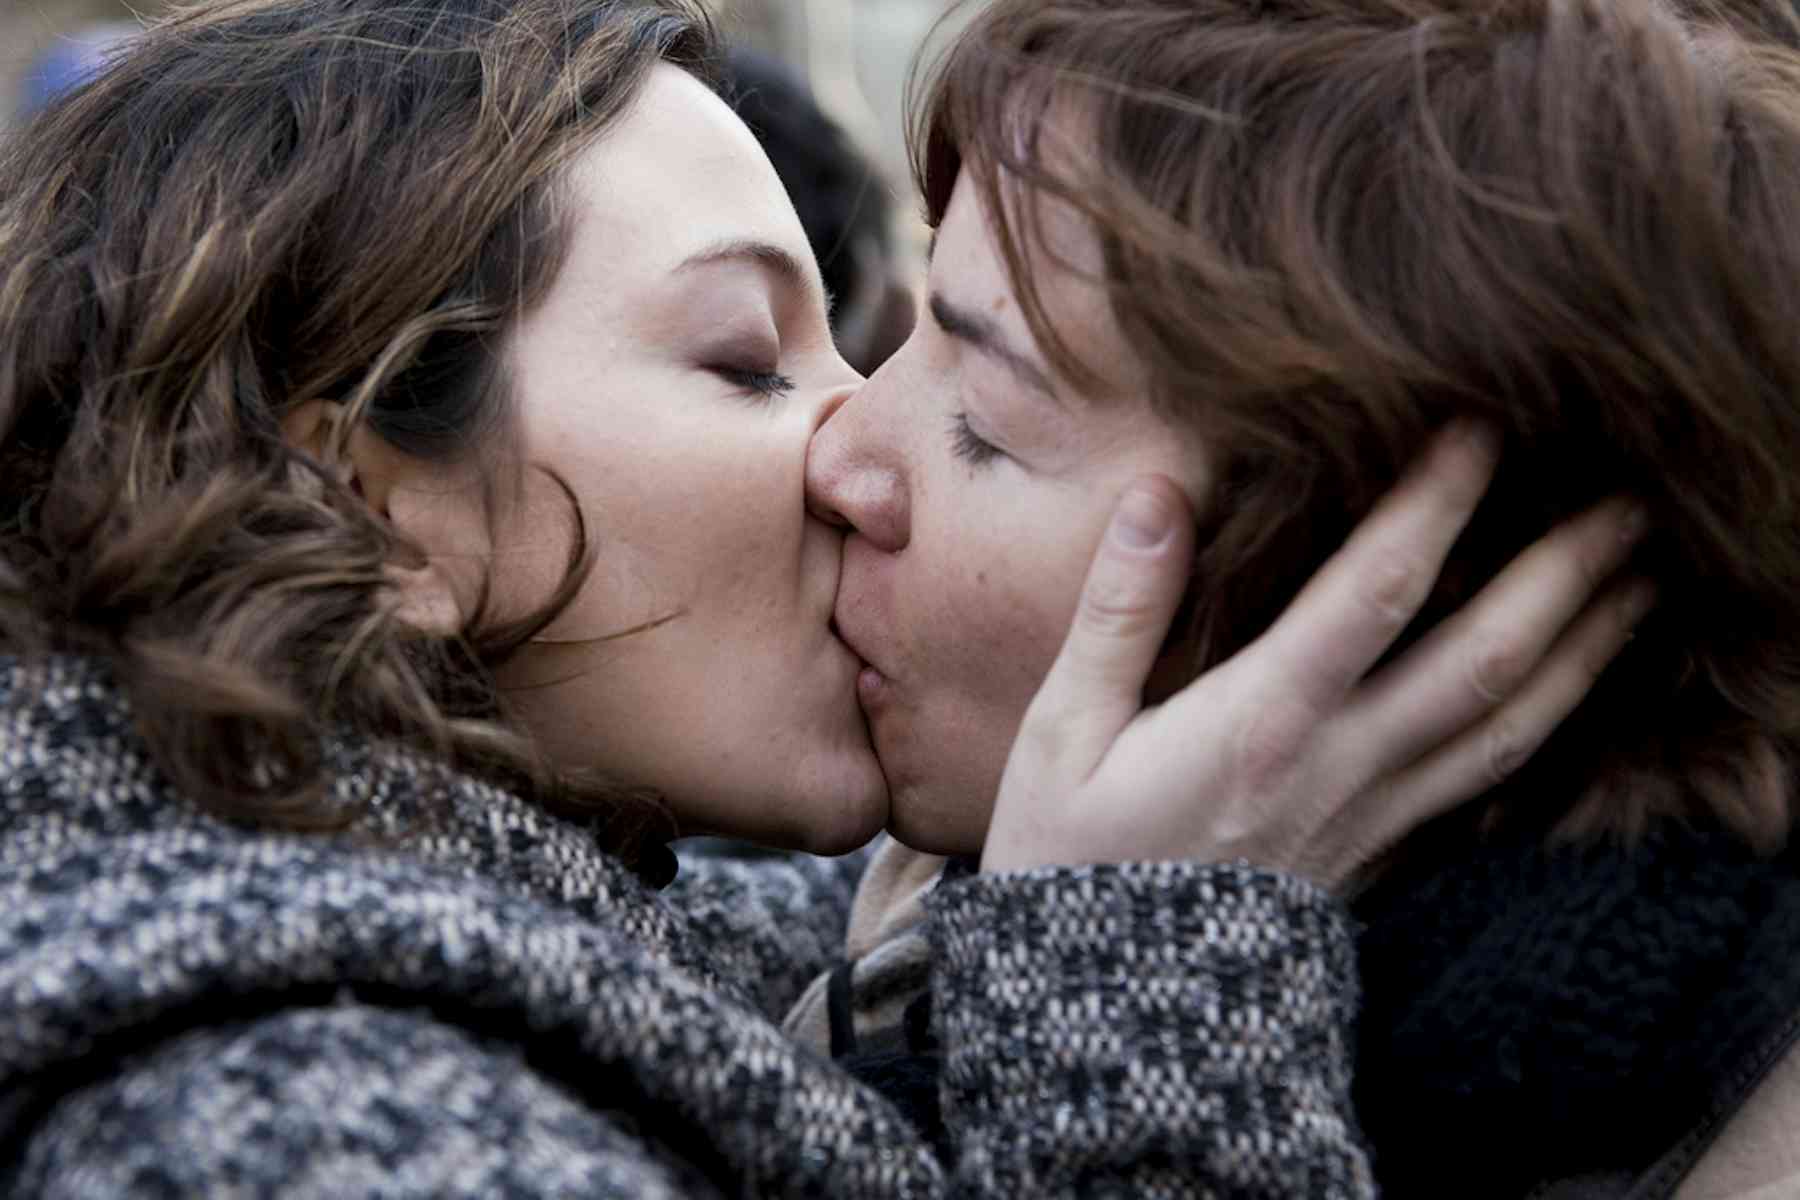 Lesbians taking. Женская любовь. Нетрадиционная женская любовь. Французский поцелуй с мамой. Поцелуй взрослой женщины.